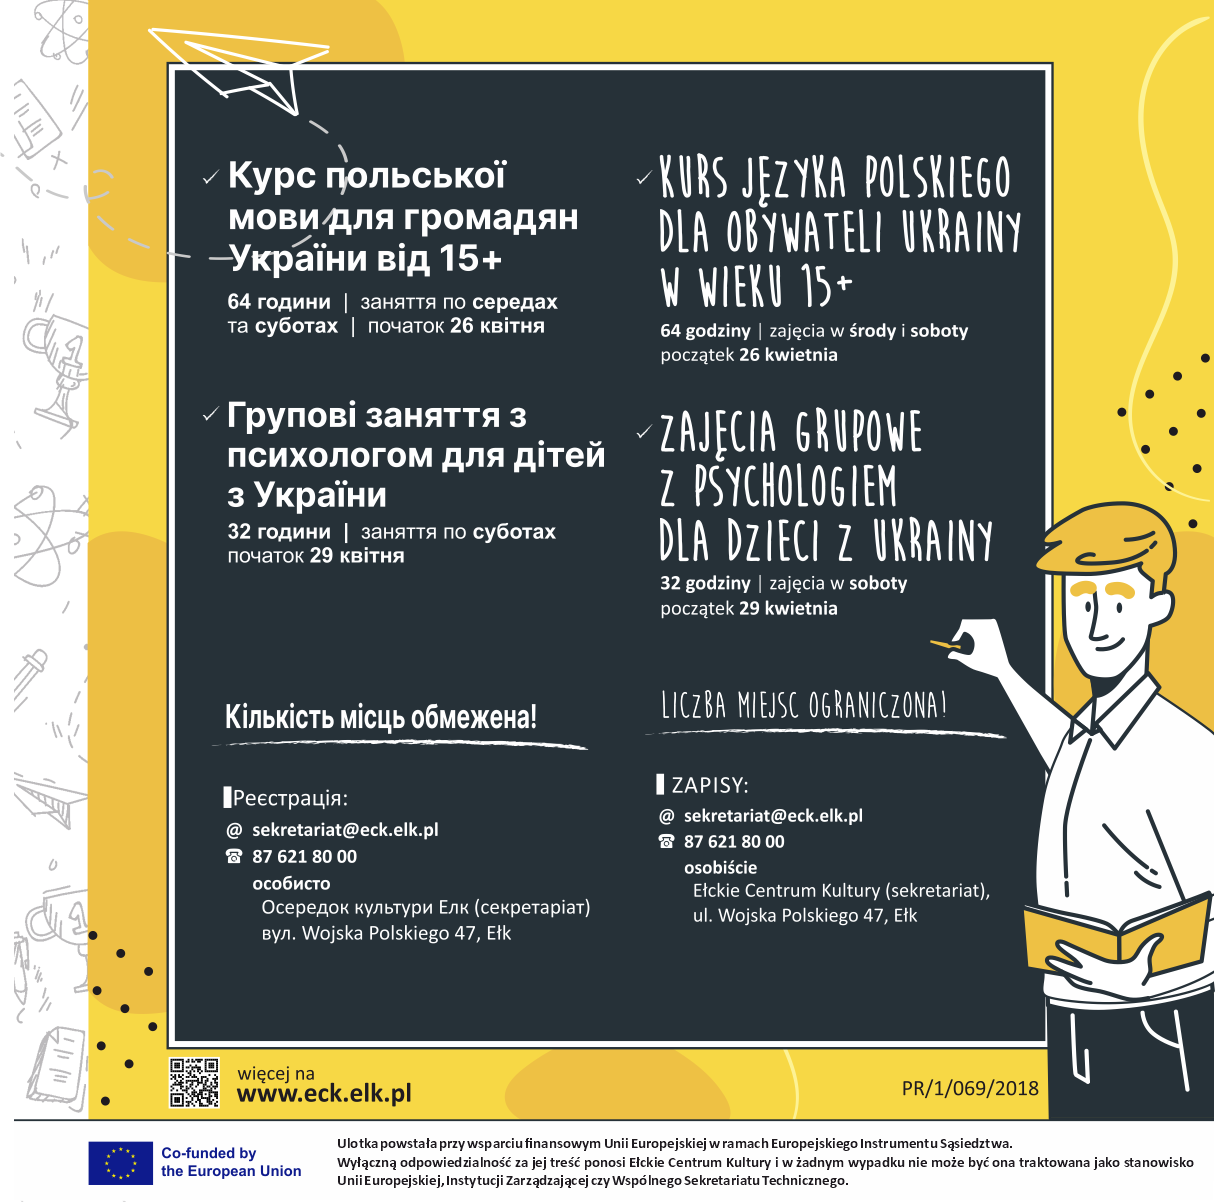 Activities for citizens of Ukraine